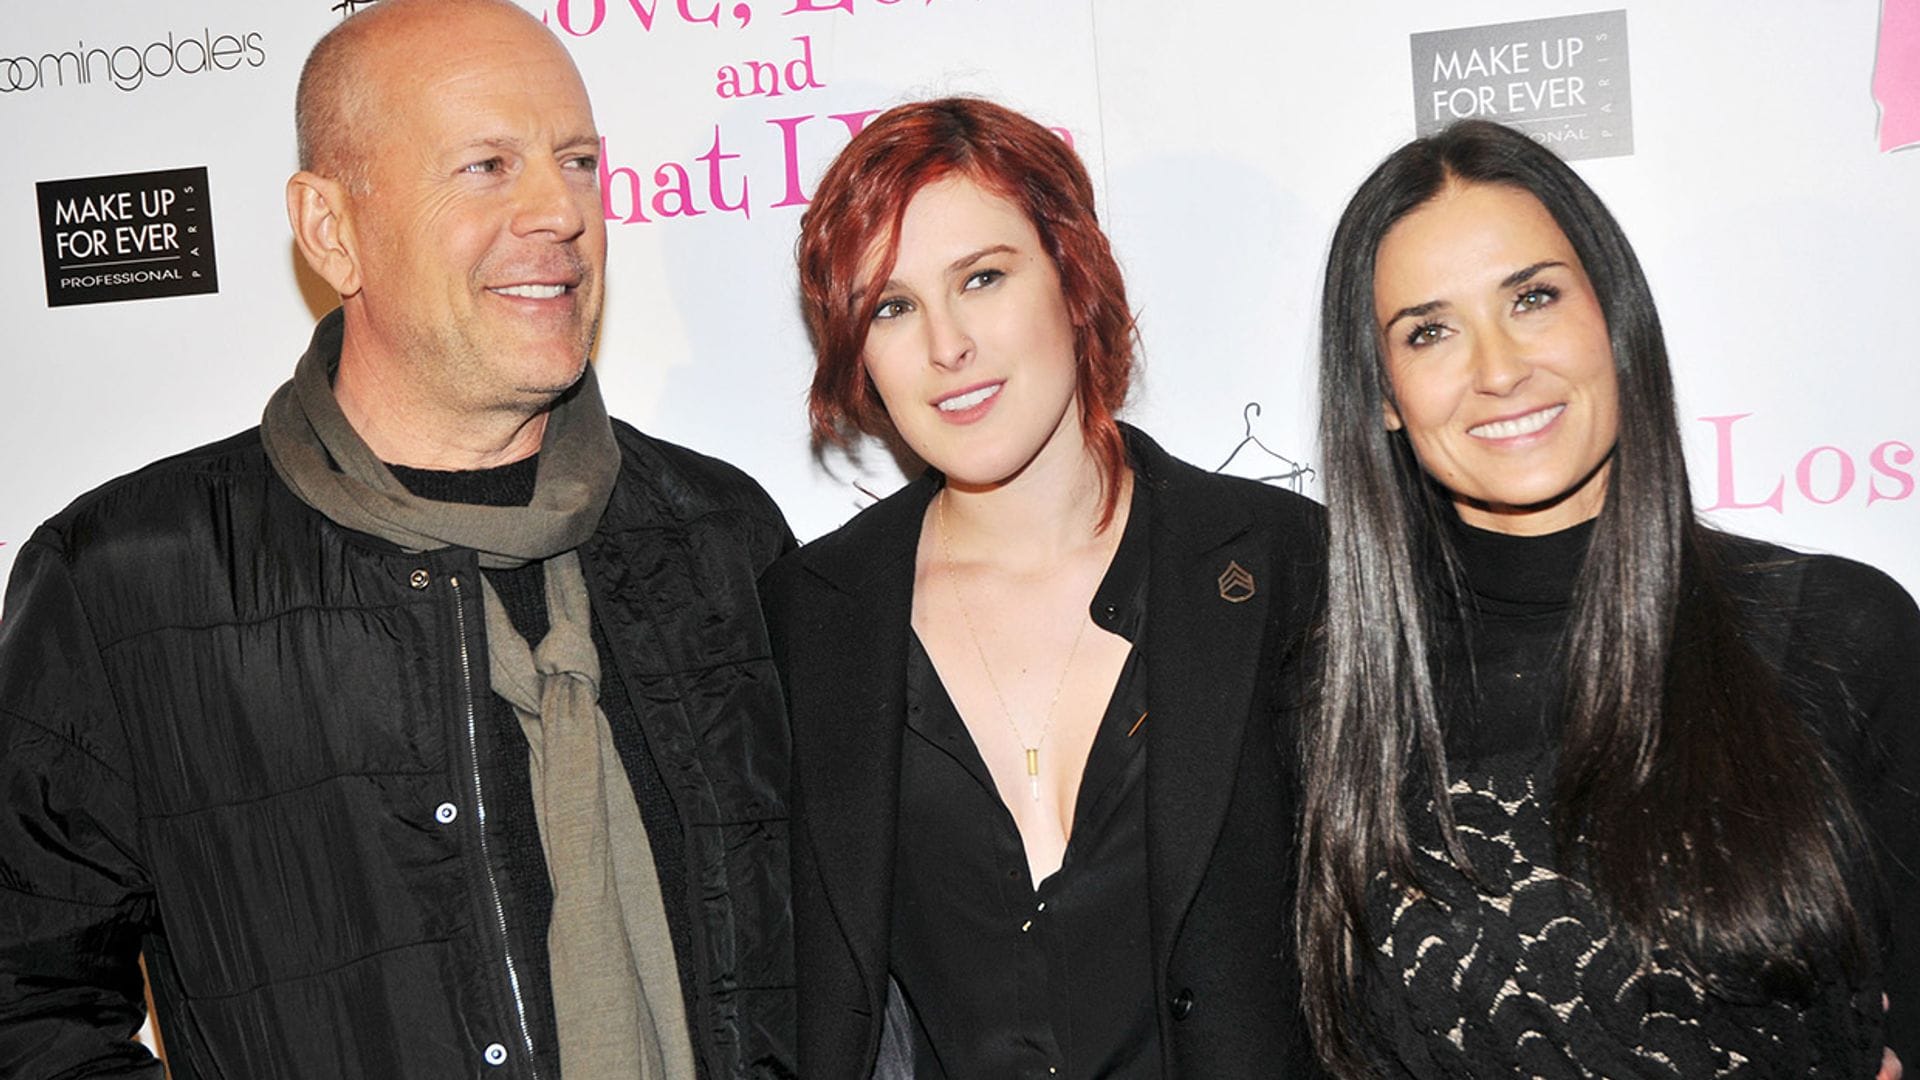 ¡Bruce Willis y Demi Moore van a ser abuelos!: su hija Rumer está embarazada